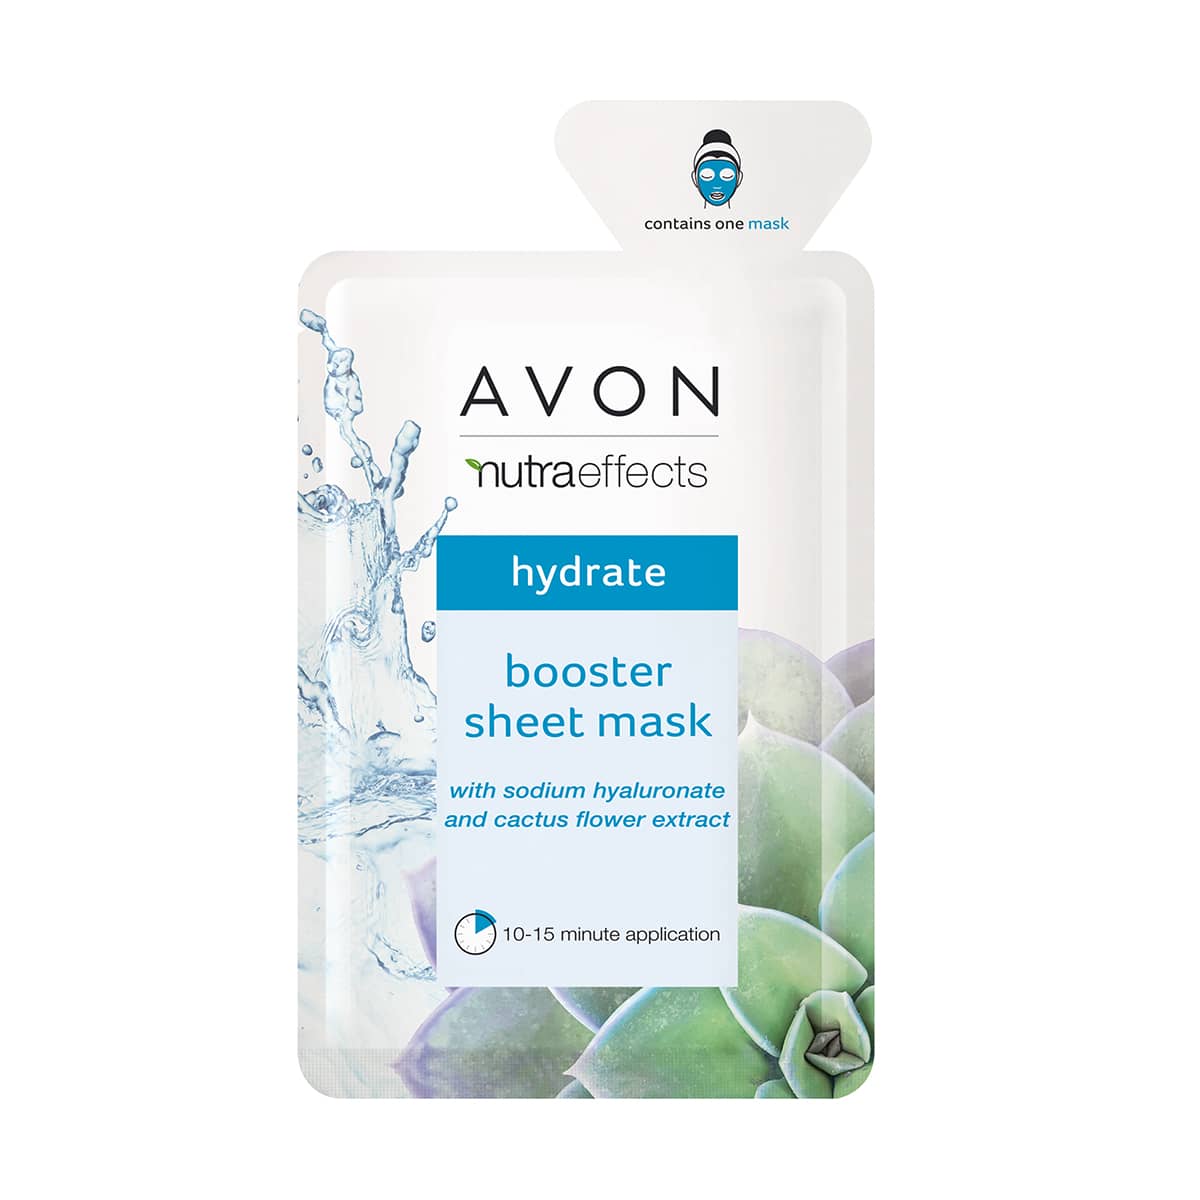 شيت ماسك ايفون ترو نيوترافيكتس الداعم Avon True Nutraeffects Booster Sheet Mask